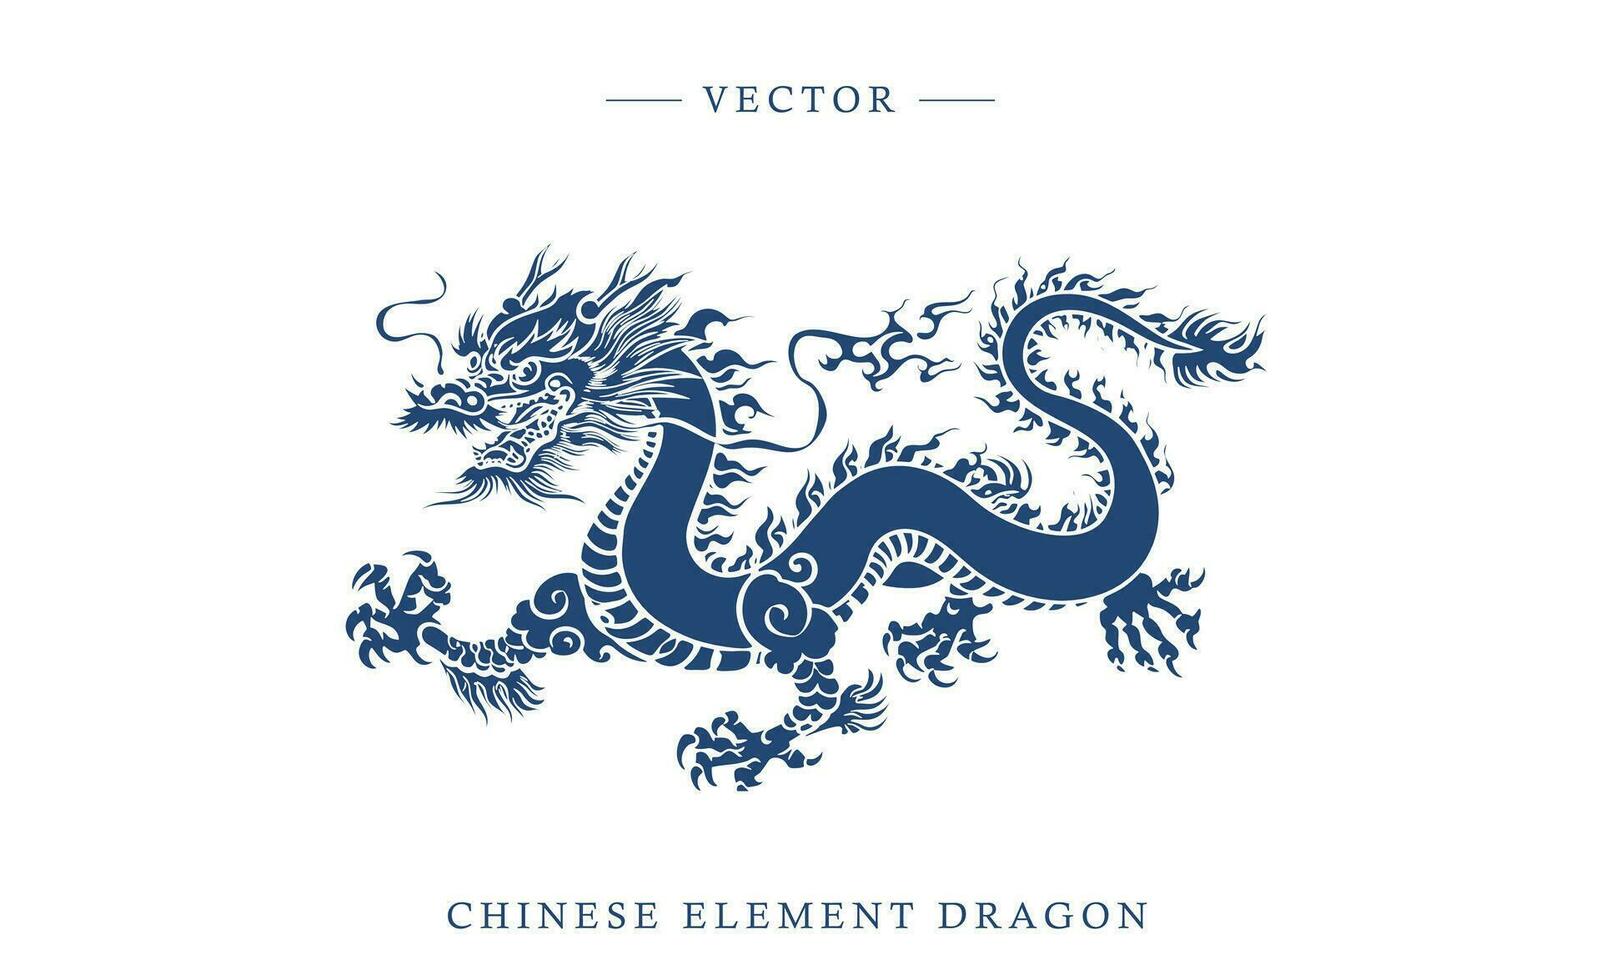 blå och vit porslin kinesisk drake mönster vektor